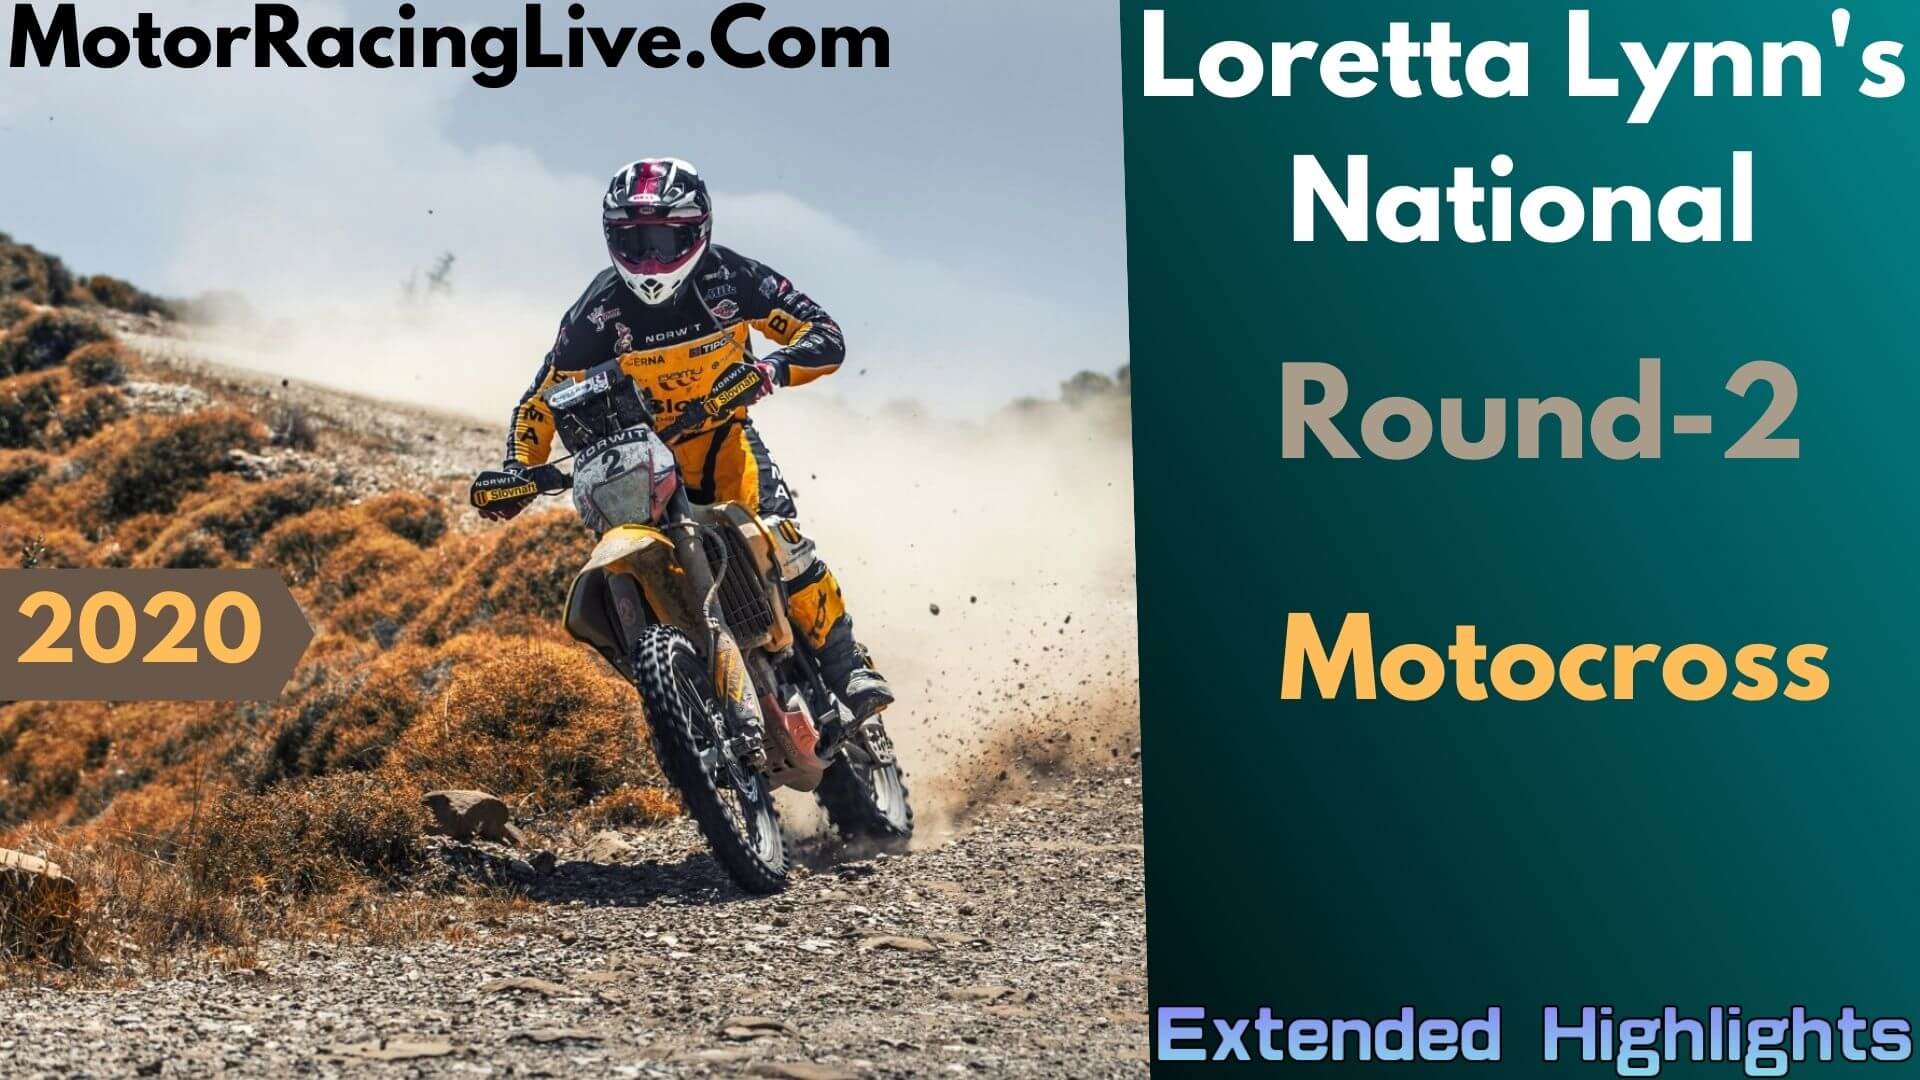 Loretta Lynns National Rd 2 Motocross Extended Highlights 2020